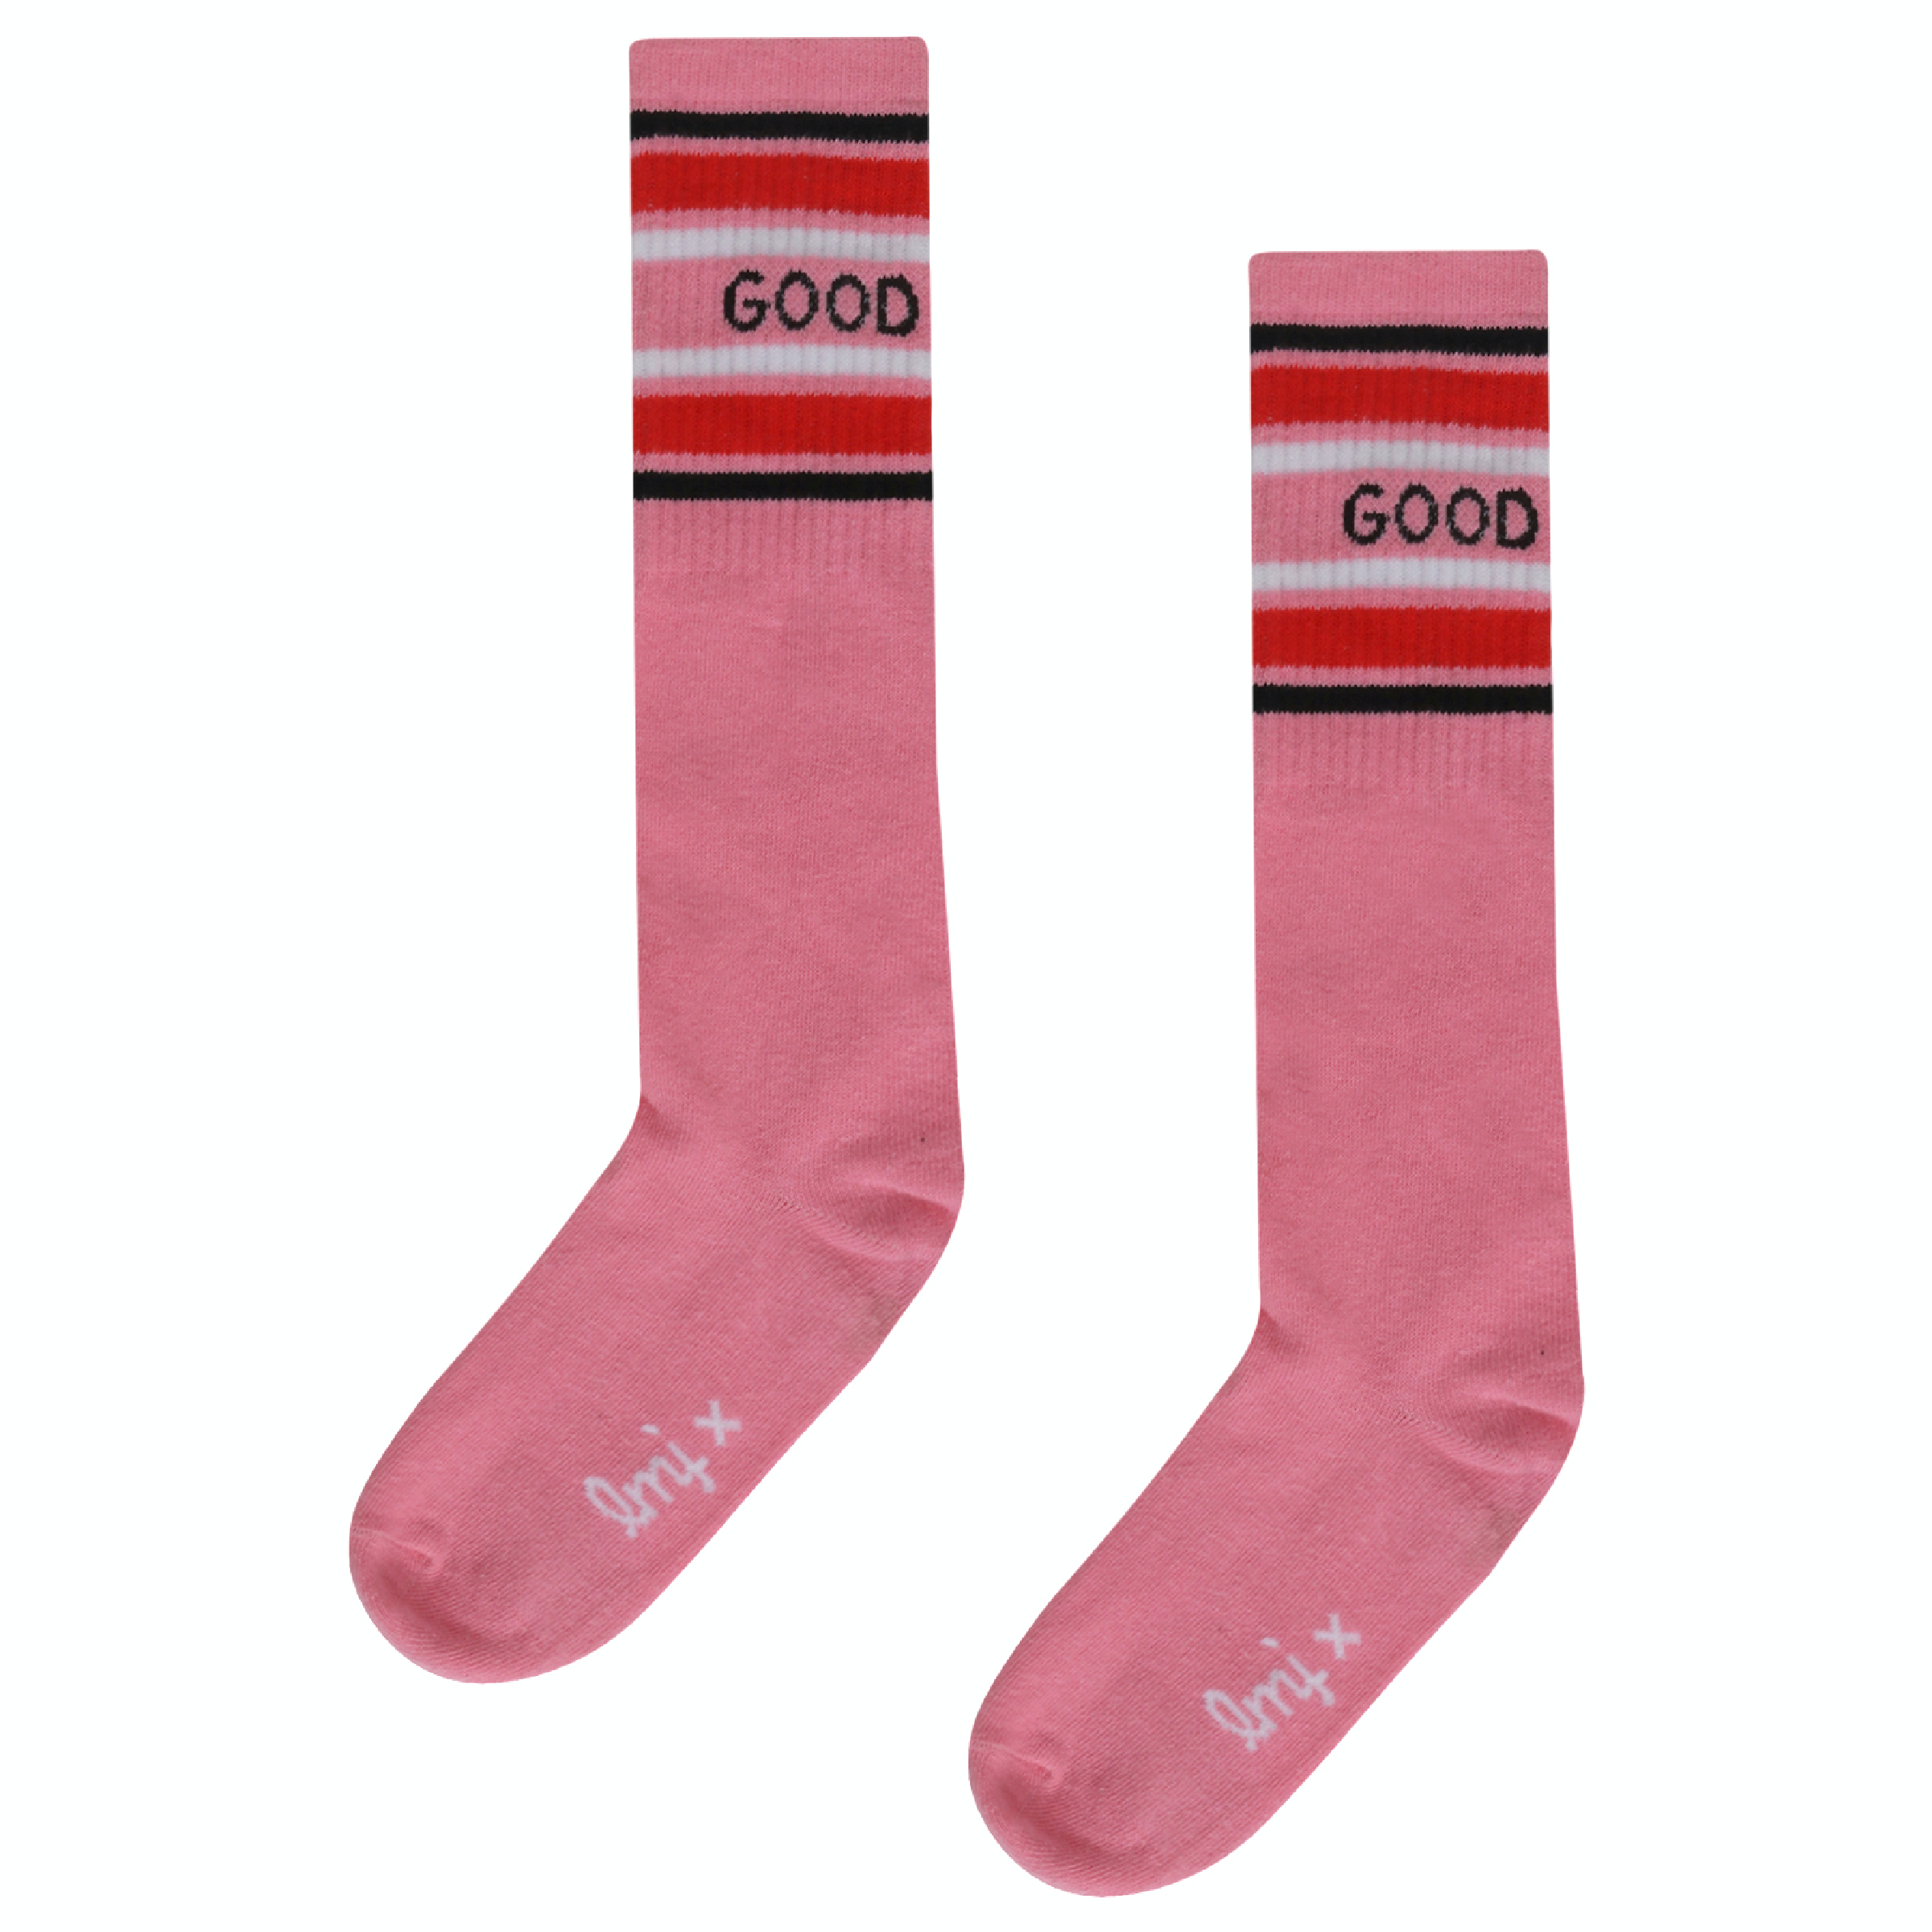 Meisjes Socks good mood  van Miss Juliette in de kleur Roze in maat 35, 38.